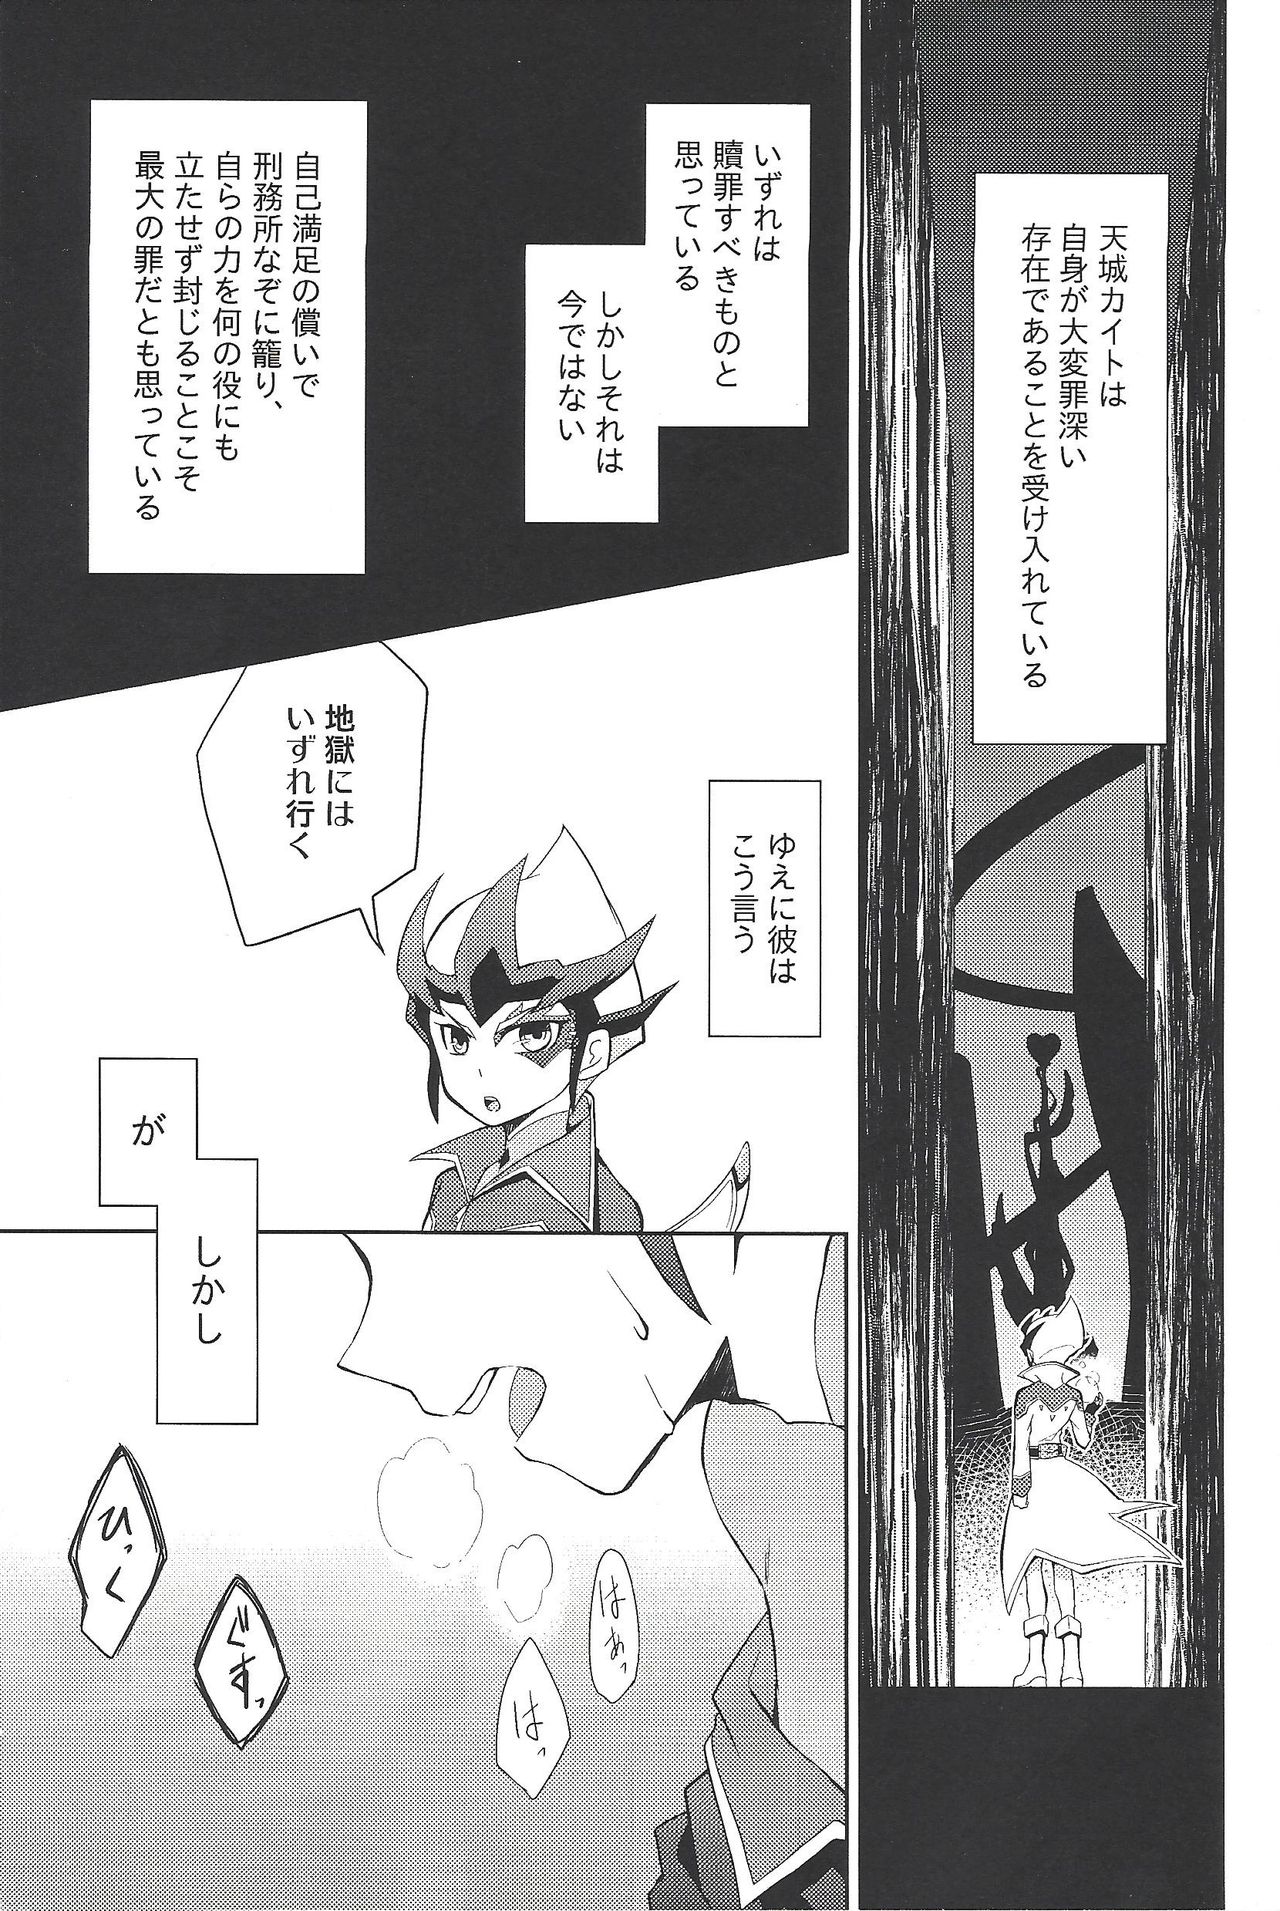 (Sennan Battle Phase 13) [G-da (kyugen)] 384400 Km-saki no hana o taoru (Yu-Gi-Oh! ZEXAL) page 2 full